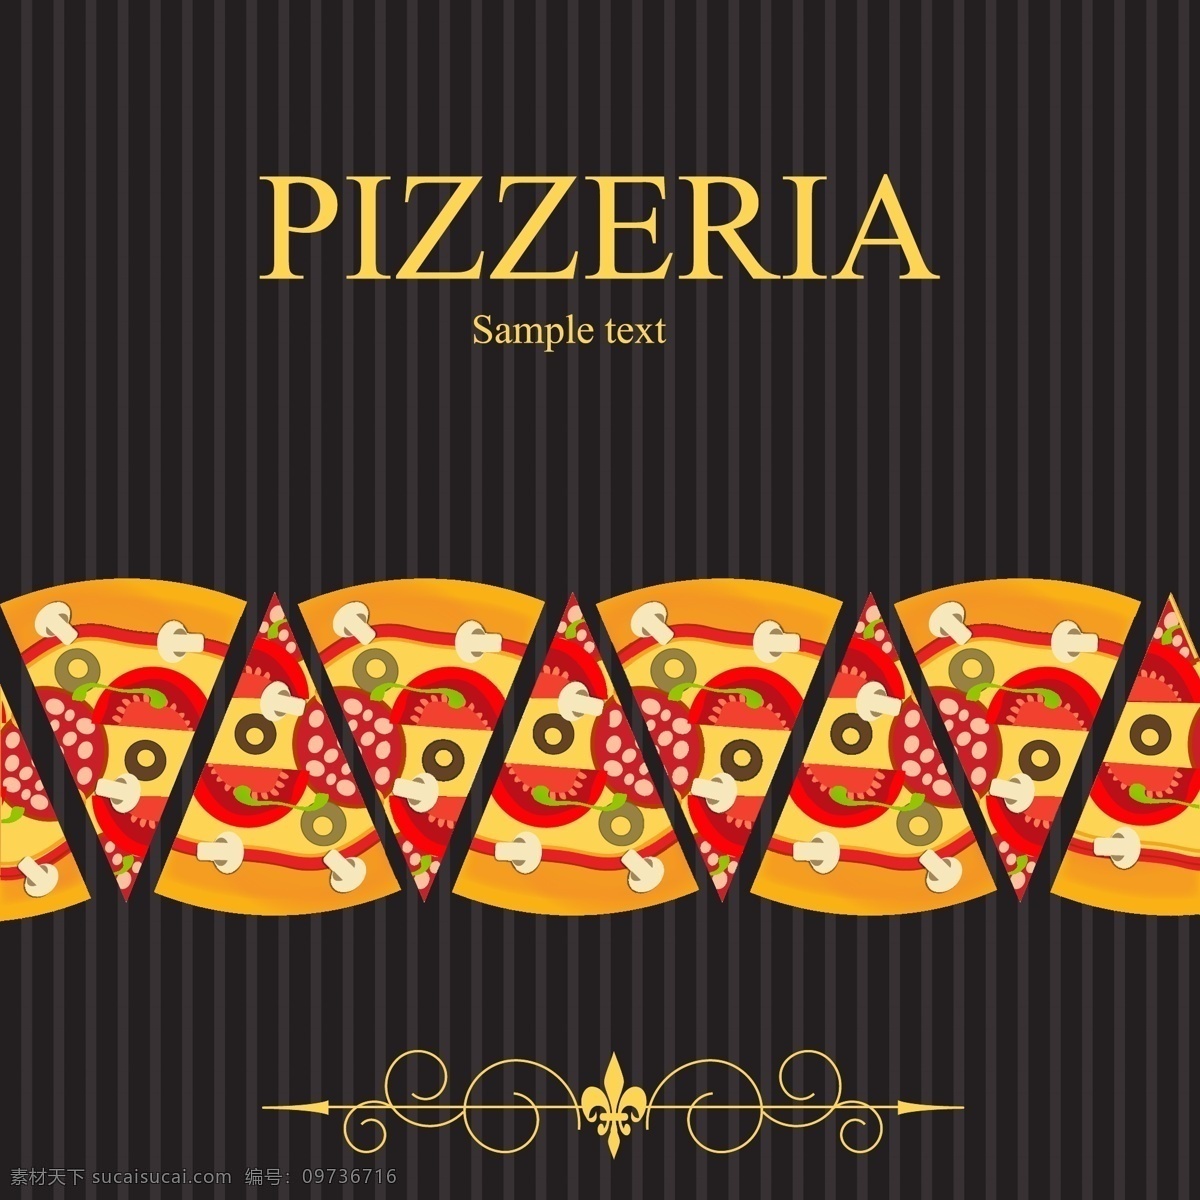 食物背景 pizza pop 背景 插画 花纹 卡通 食物 矢量素材 西餐 宣传画 矢量图 日常生活